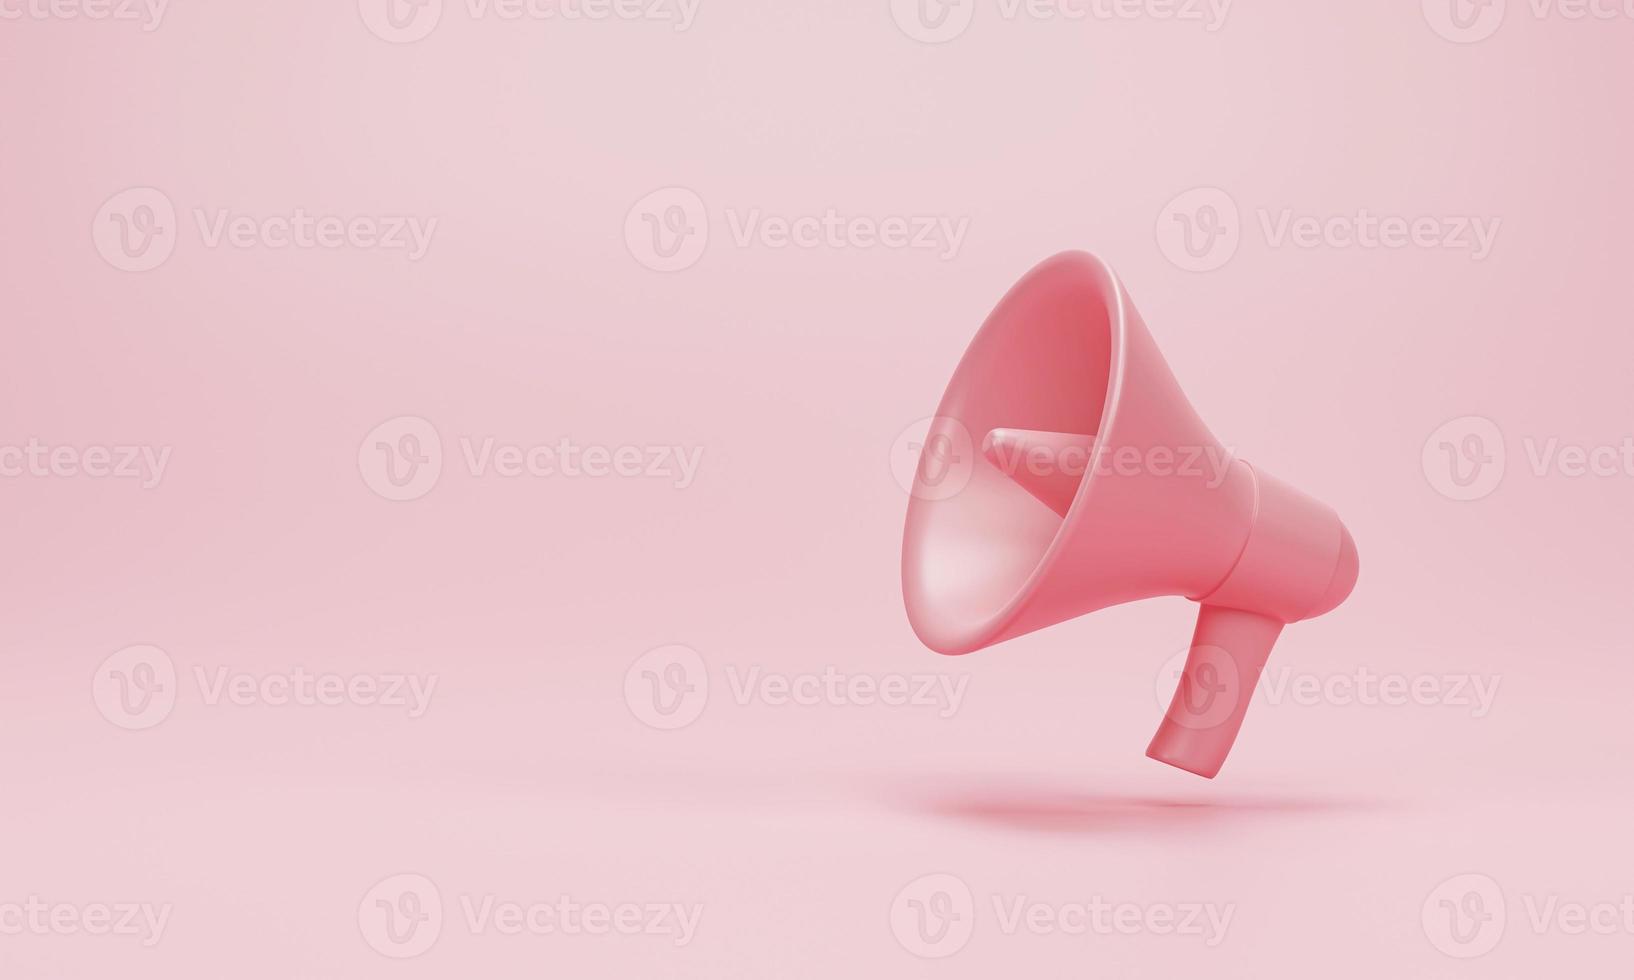 rendu 3d illustration 3d. mégaphone, haut-parleur sur fond pastel rose. style de dessin animé plat moderne minimal. notion d'annonce photo